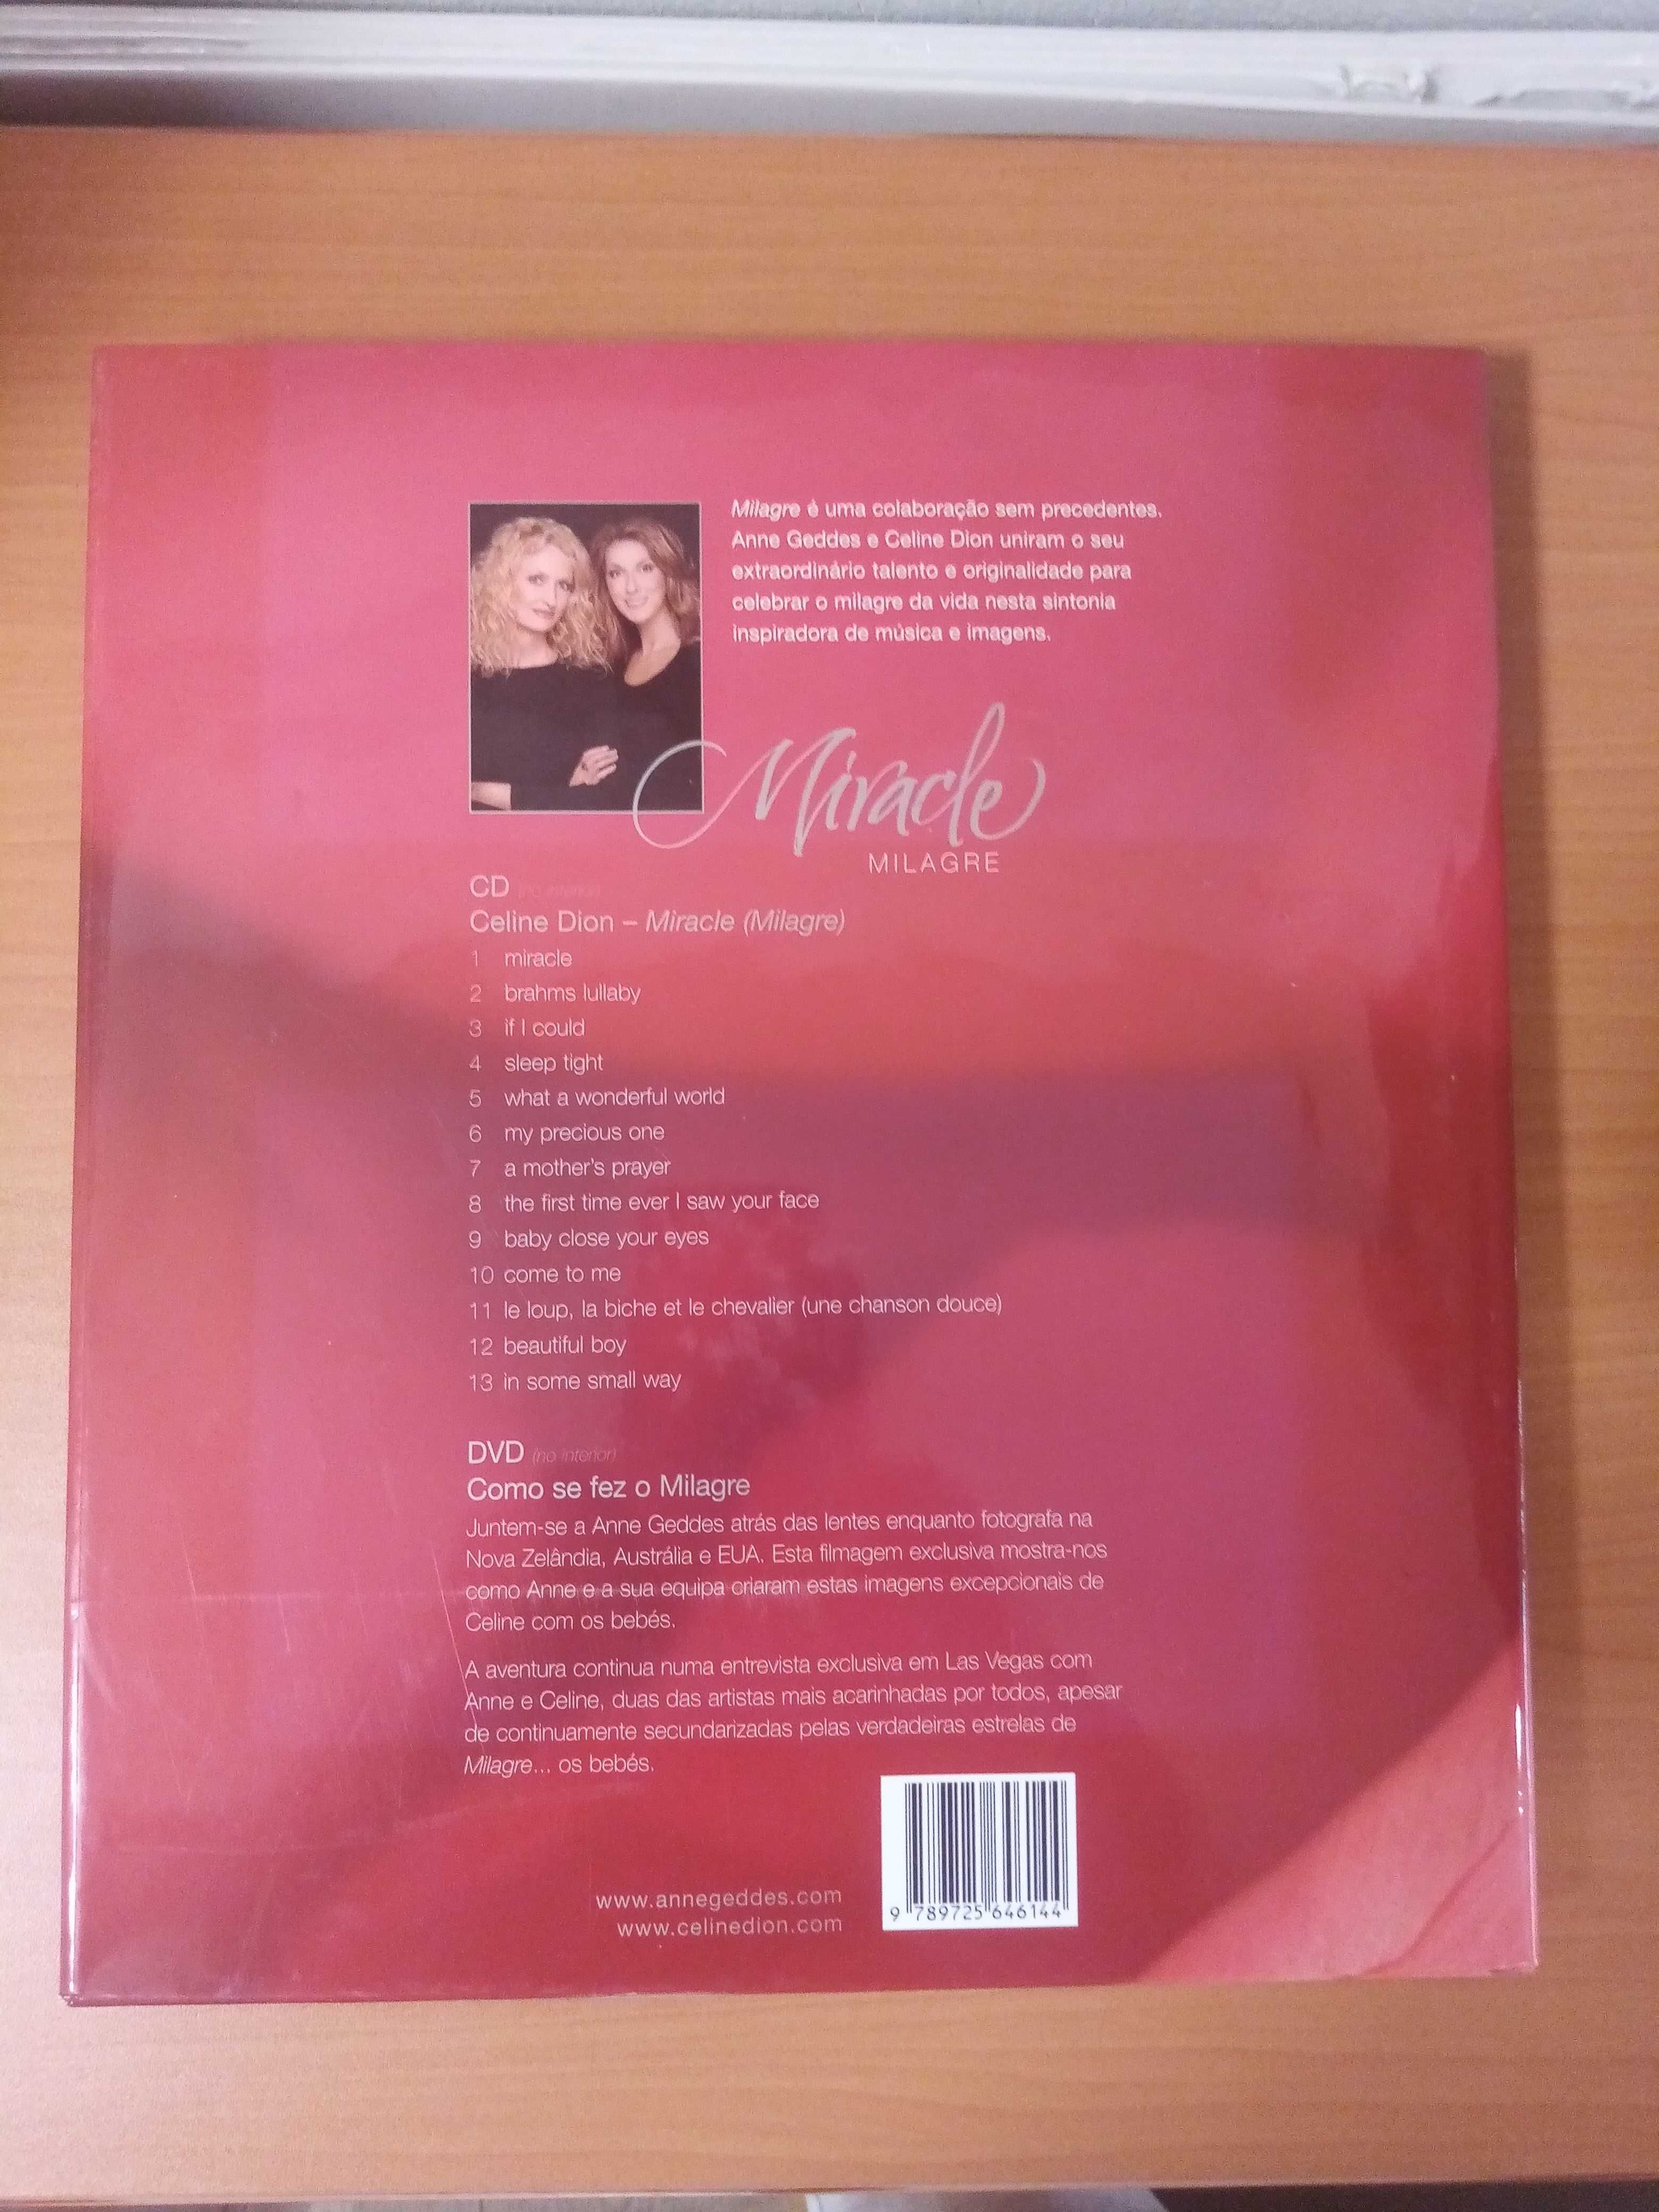 Milagre : Celebração de uma Nova Vida, de Anne Geddes e Celine Dion